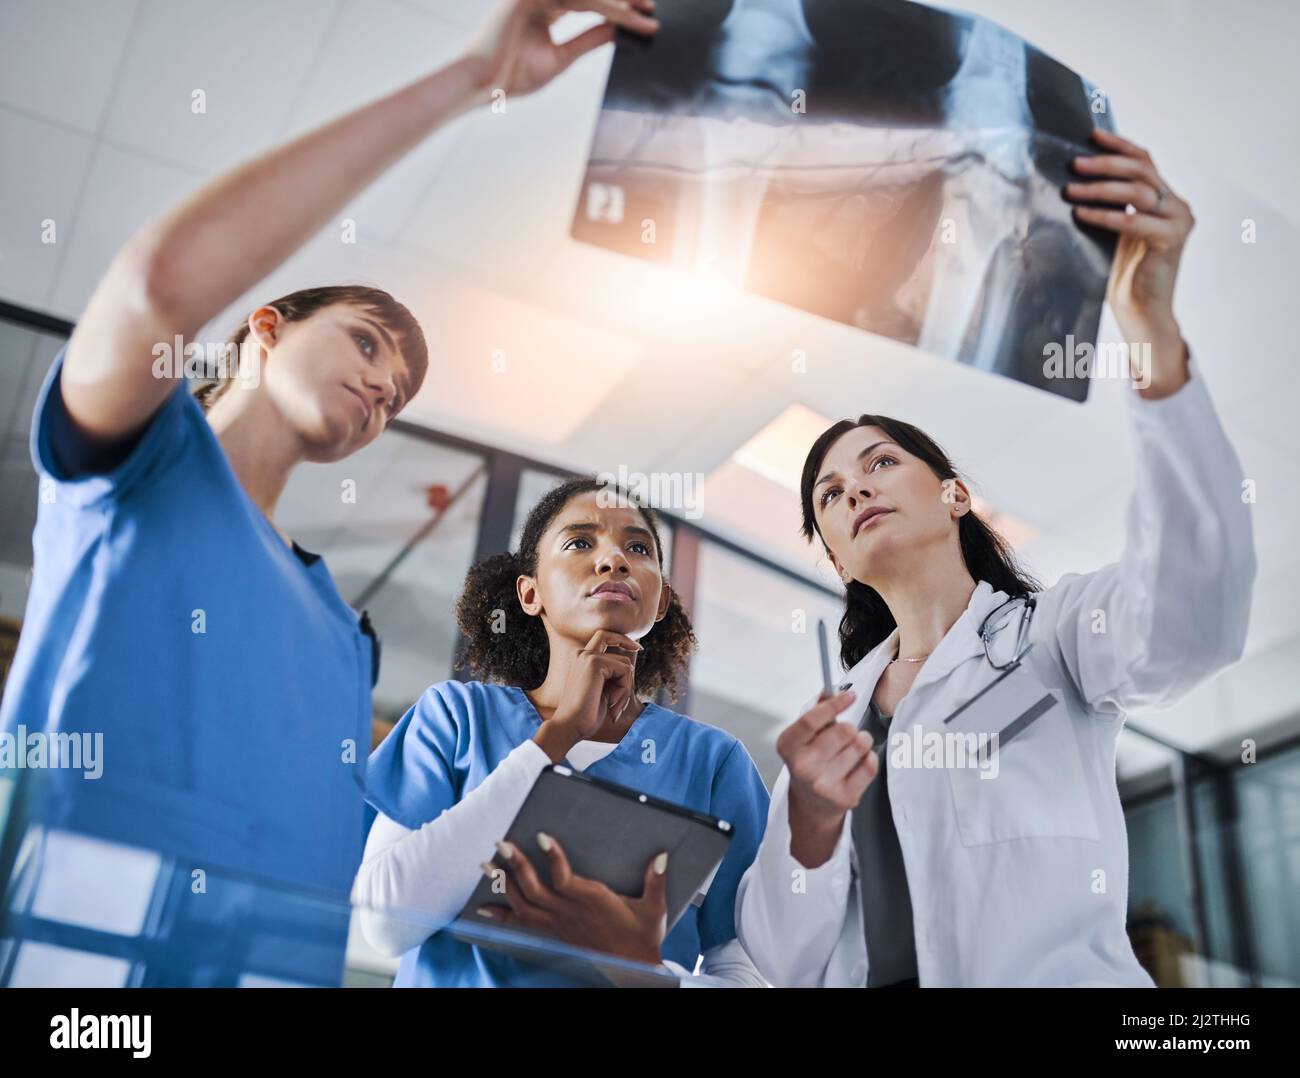 Tutto diventa più chiaro. Shot di un gruppo di medici che discutono i risultati di una radiografia in un ospedale. Foto Stock